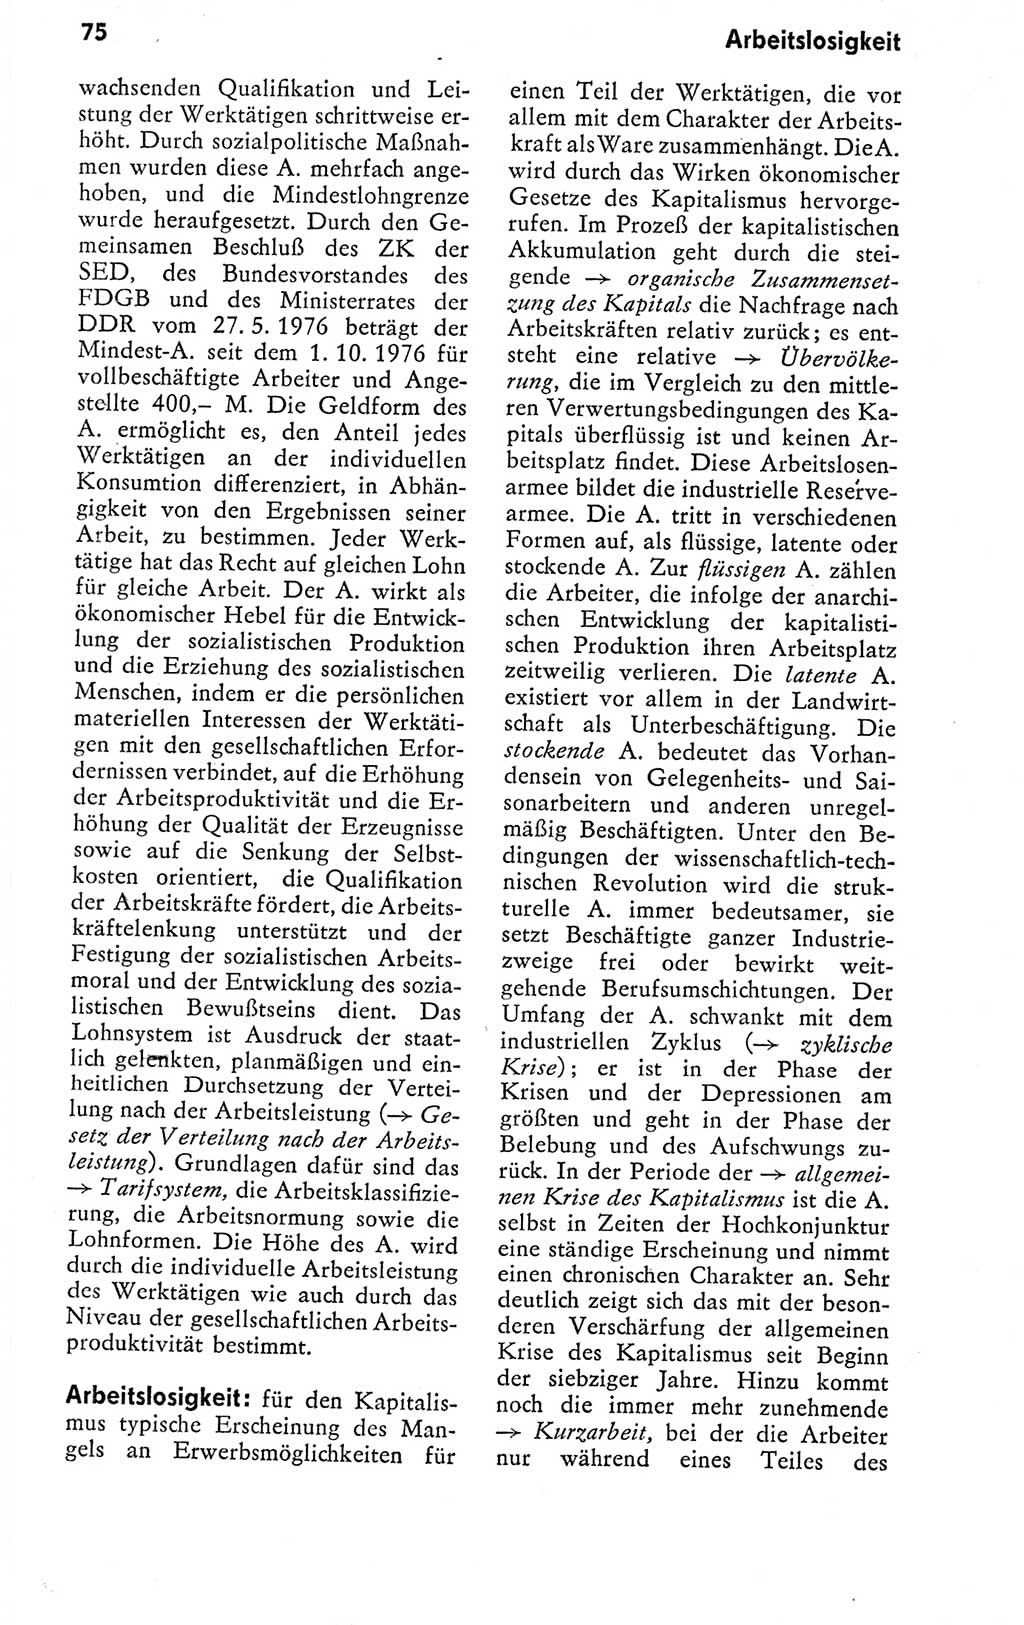 Kleines politisches Wörterbuch [Deutsche Demokratische Republik (DDR)] 1978, Seite 75 (Kl. pol. Wb. DDR 1978, S. 75)